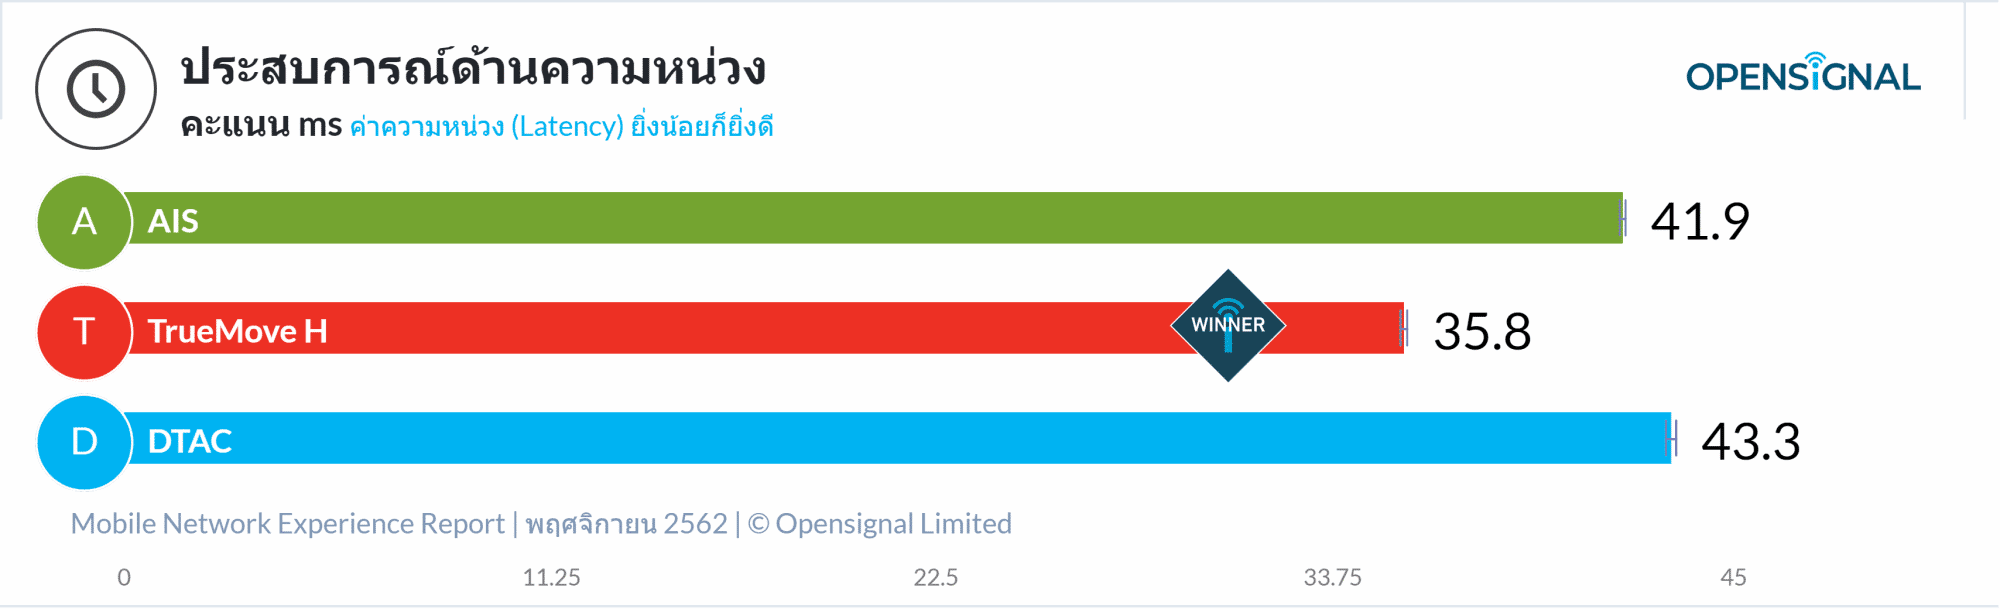 OpenSignal เผยรายงานวิเคราะห์ประสบการณ์เครือข่ายมือถือของไทย TrueMove H นำอันดับหนึ่ง 15